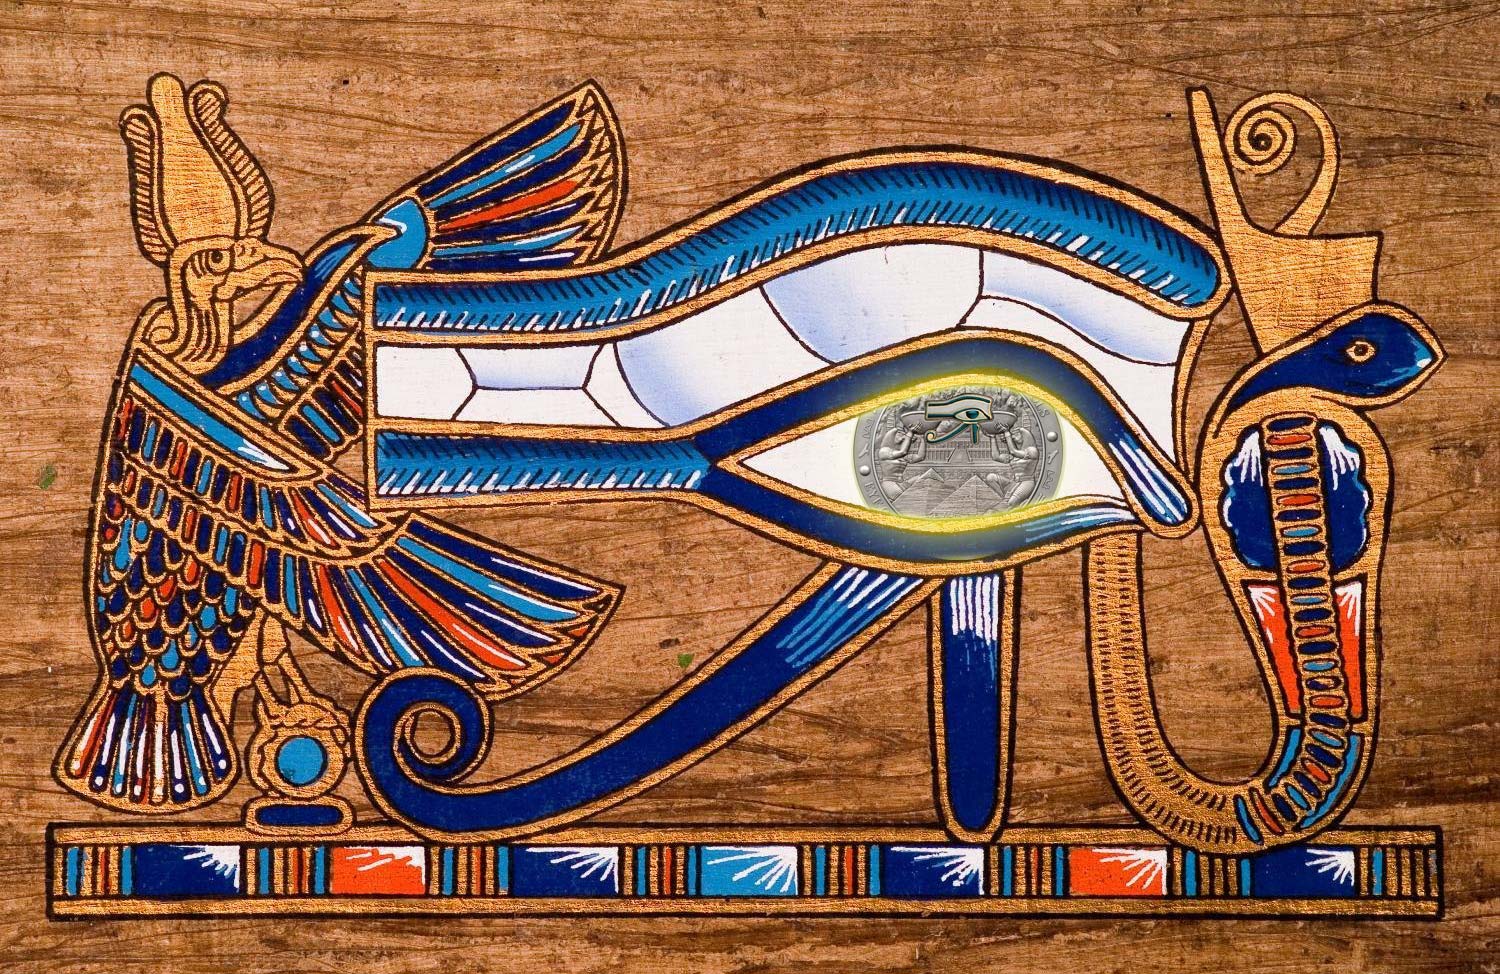  Signification de l'Oeil d'Horus : origine et symbole égyptien ?